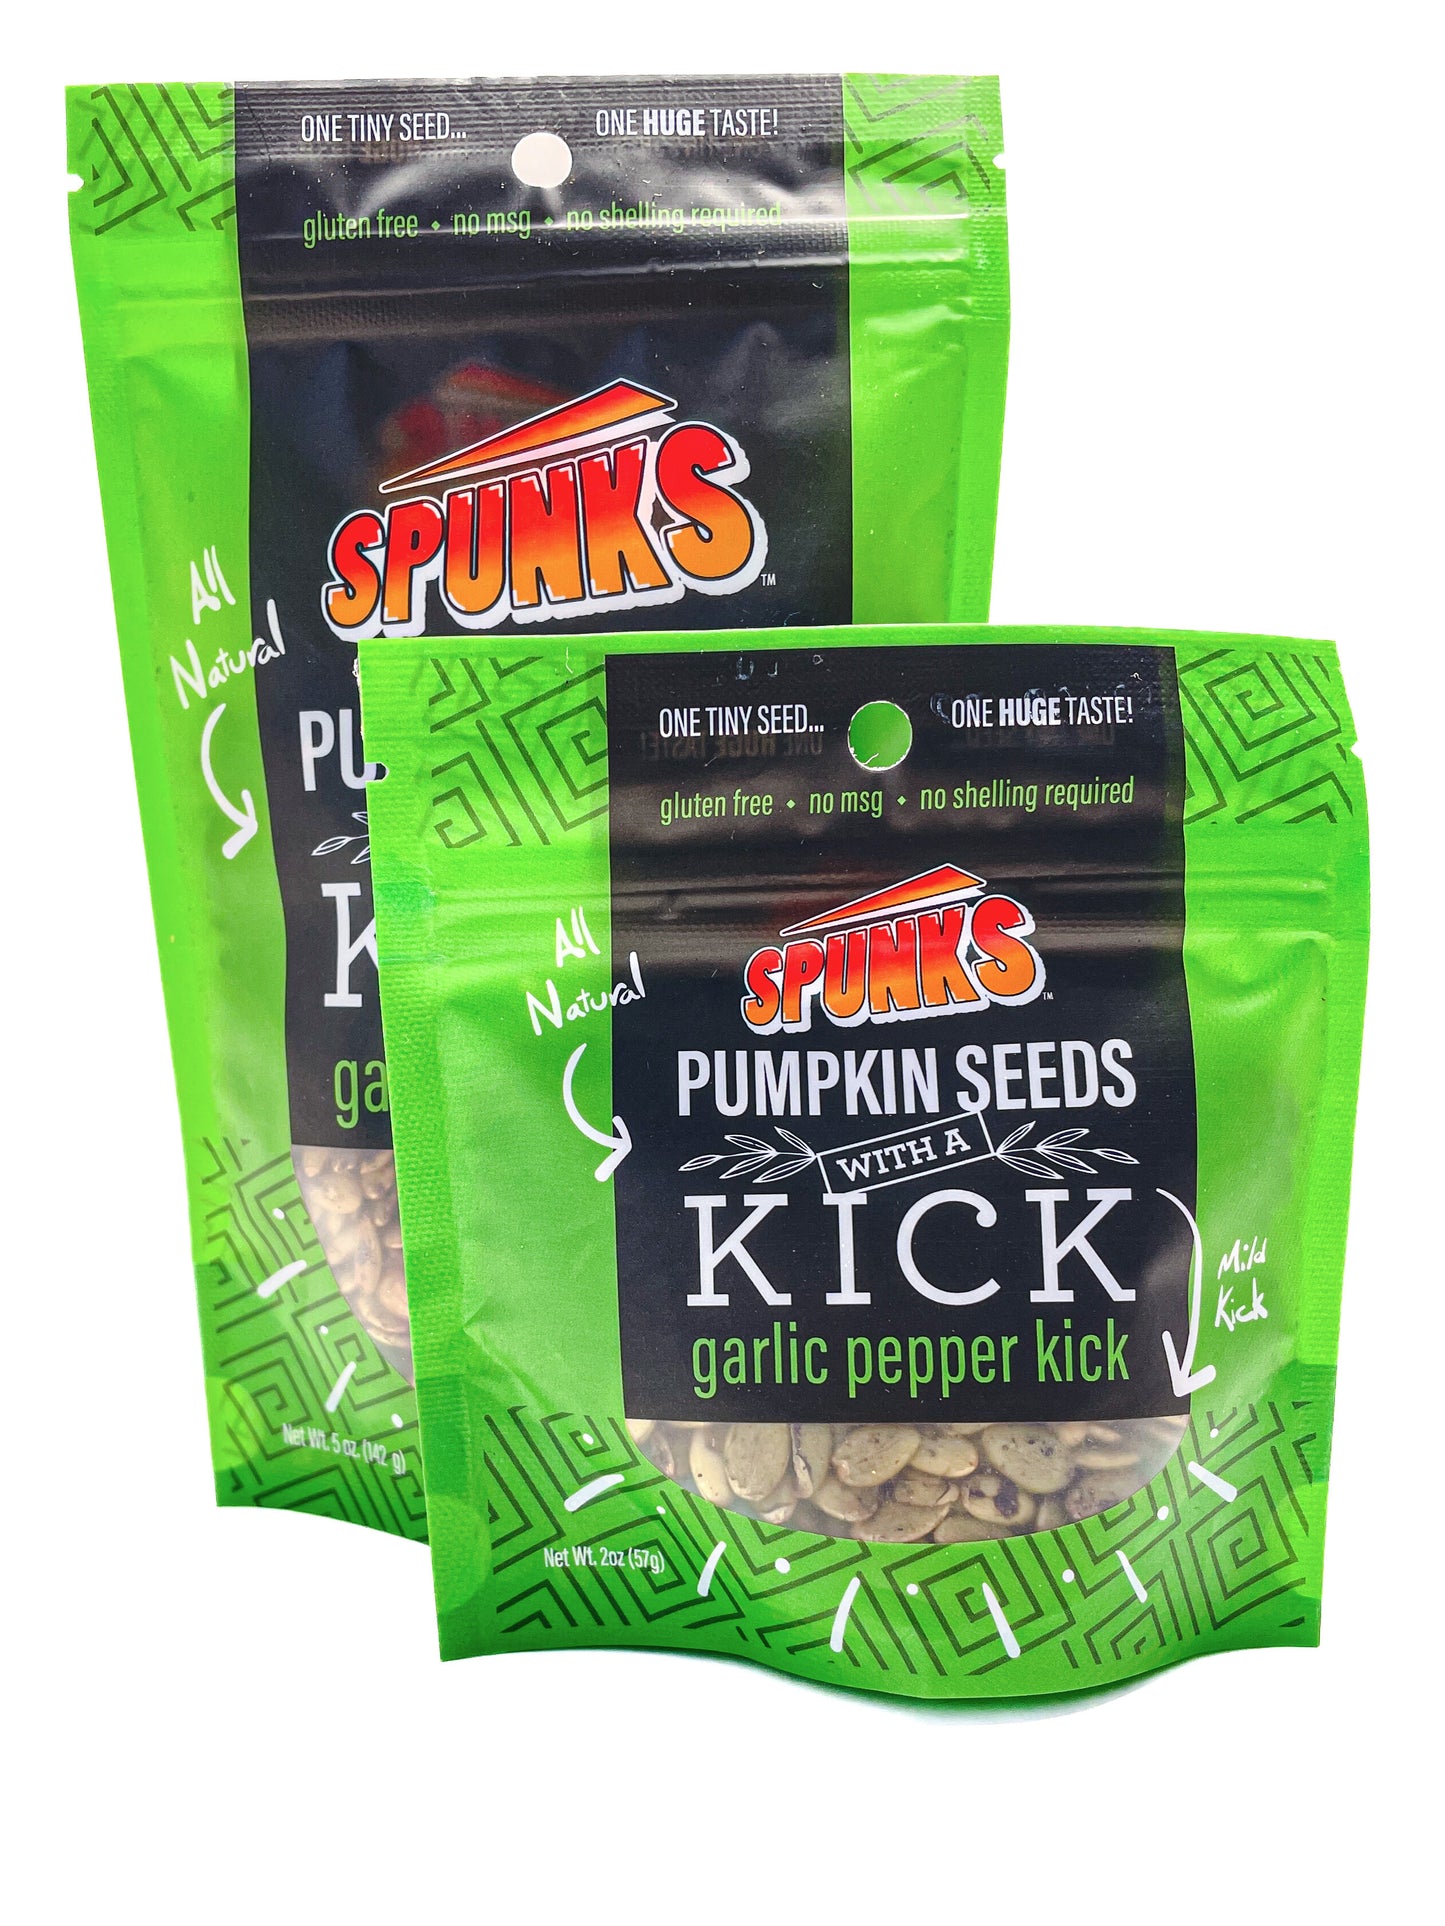 Spunks Pumpkin Seeds